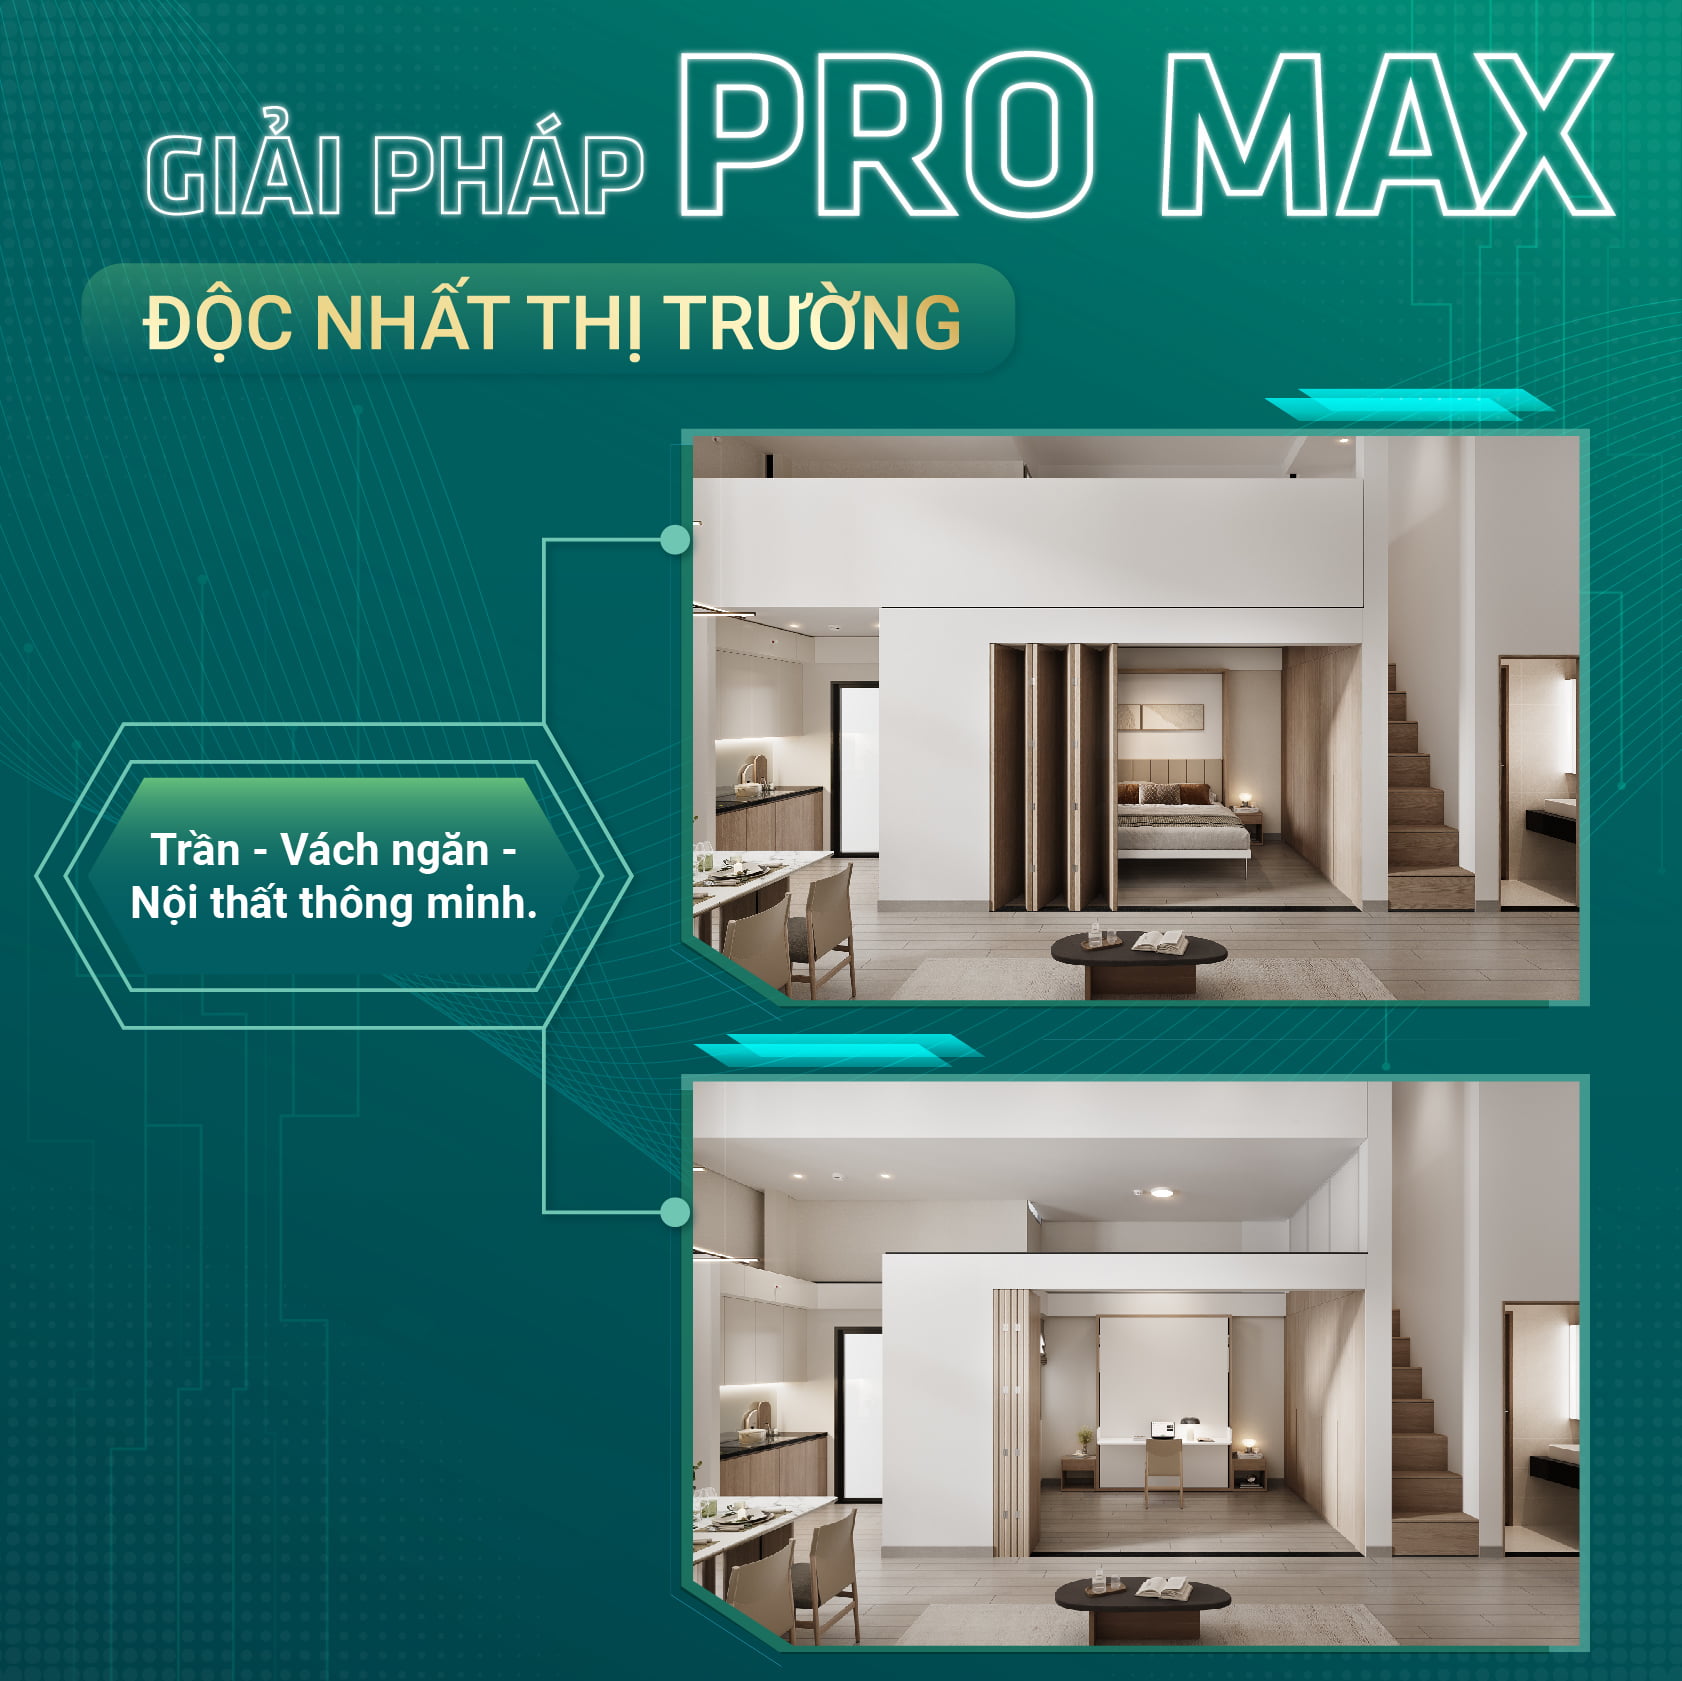 Căn hộ Hi Ceiling với thiết kế Pro max độc nhất trên thị trường